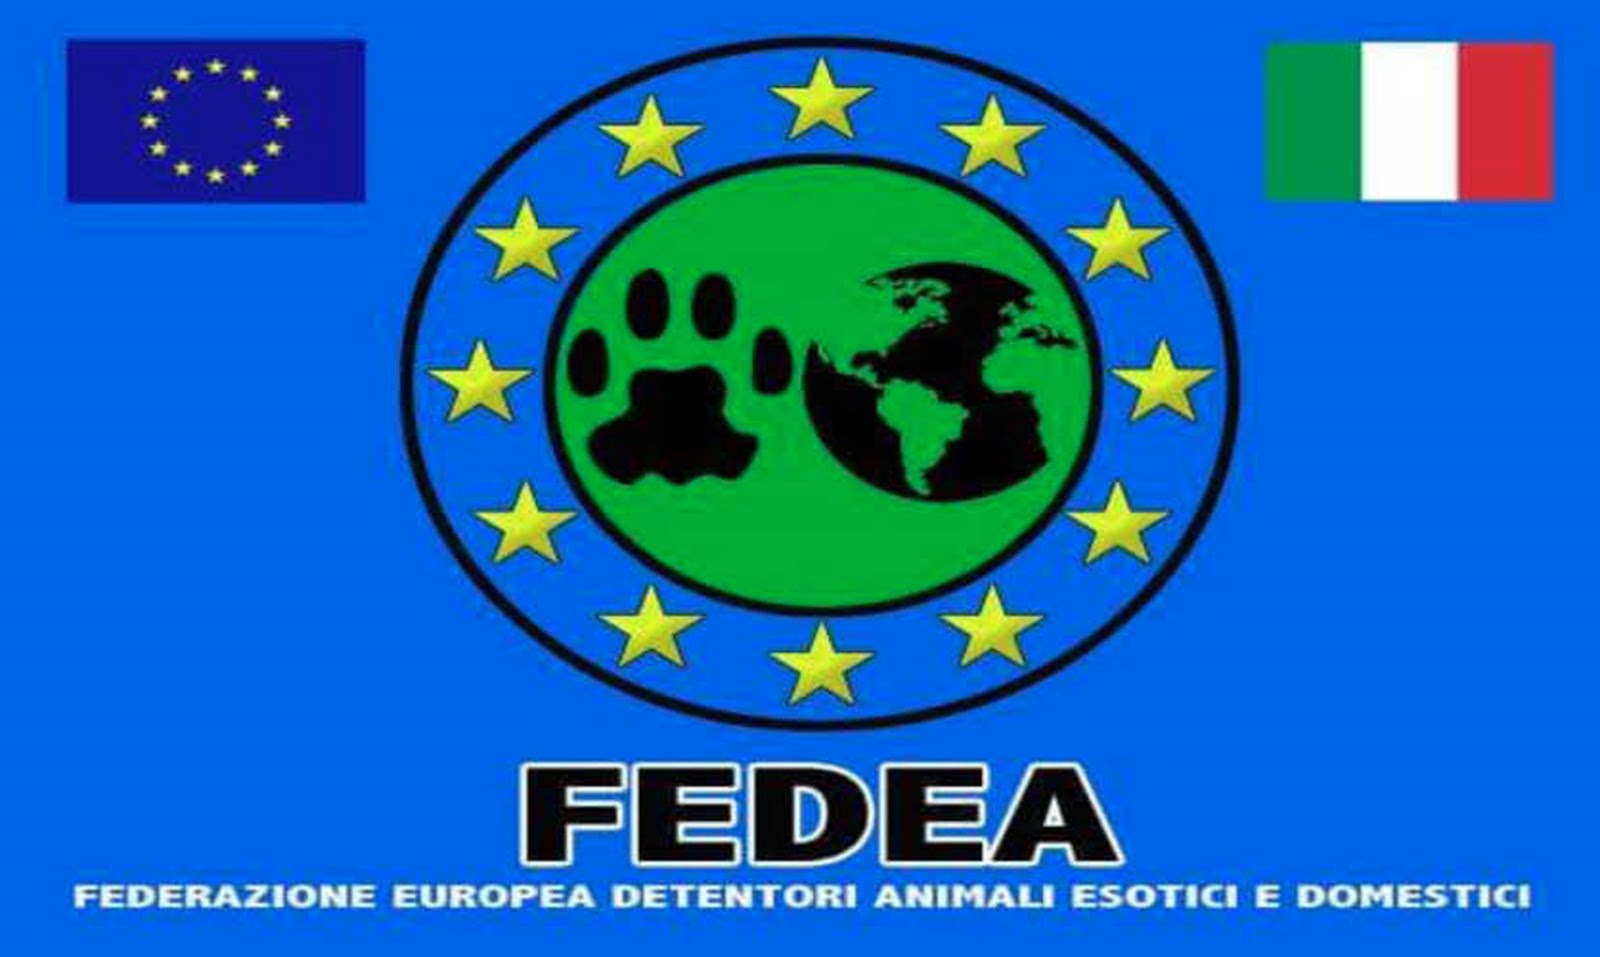 FEDERAZIONE EUROPEA DETENTORI ANIMALI ESOTICI E DOMESTICI